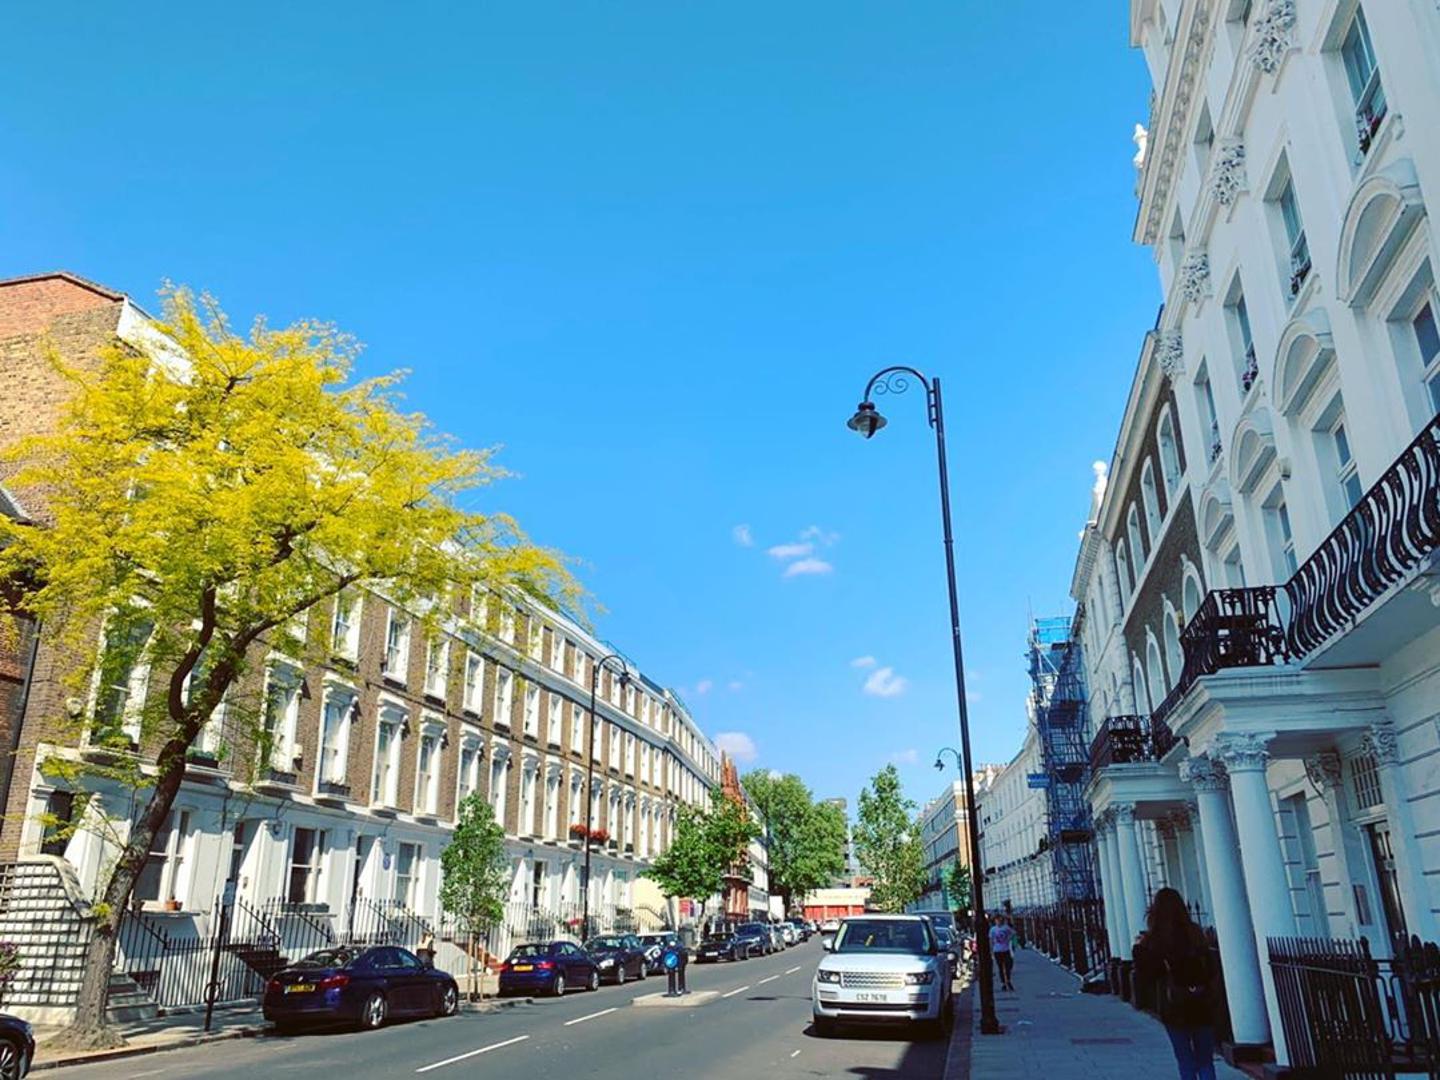 London, koji je inače poznat po kiši i sivilu, danas se također može pohvaliti suncem i lijepim vremenom te prosječnom temperaturom od oko 17 stupnjeva Celzijevih.